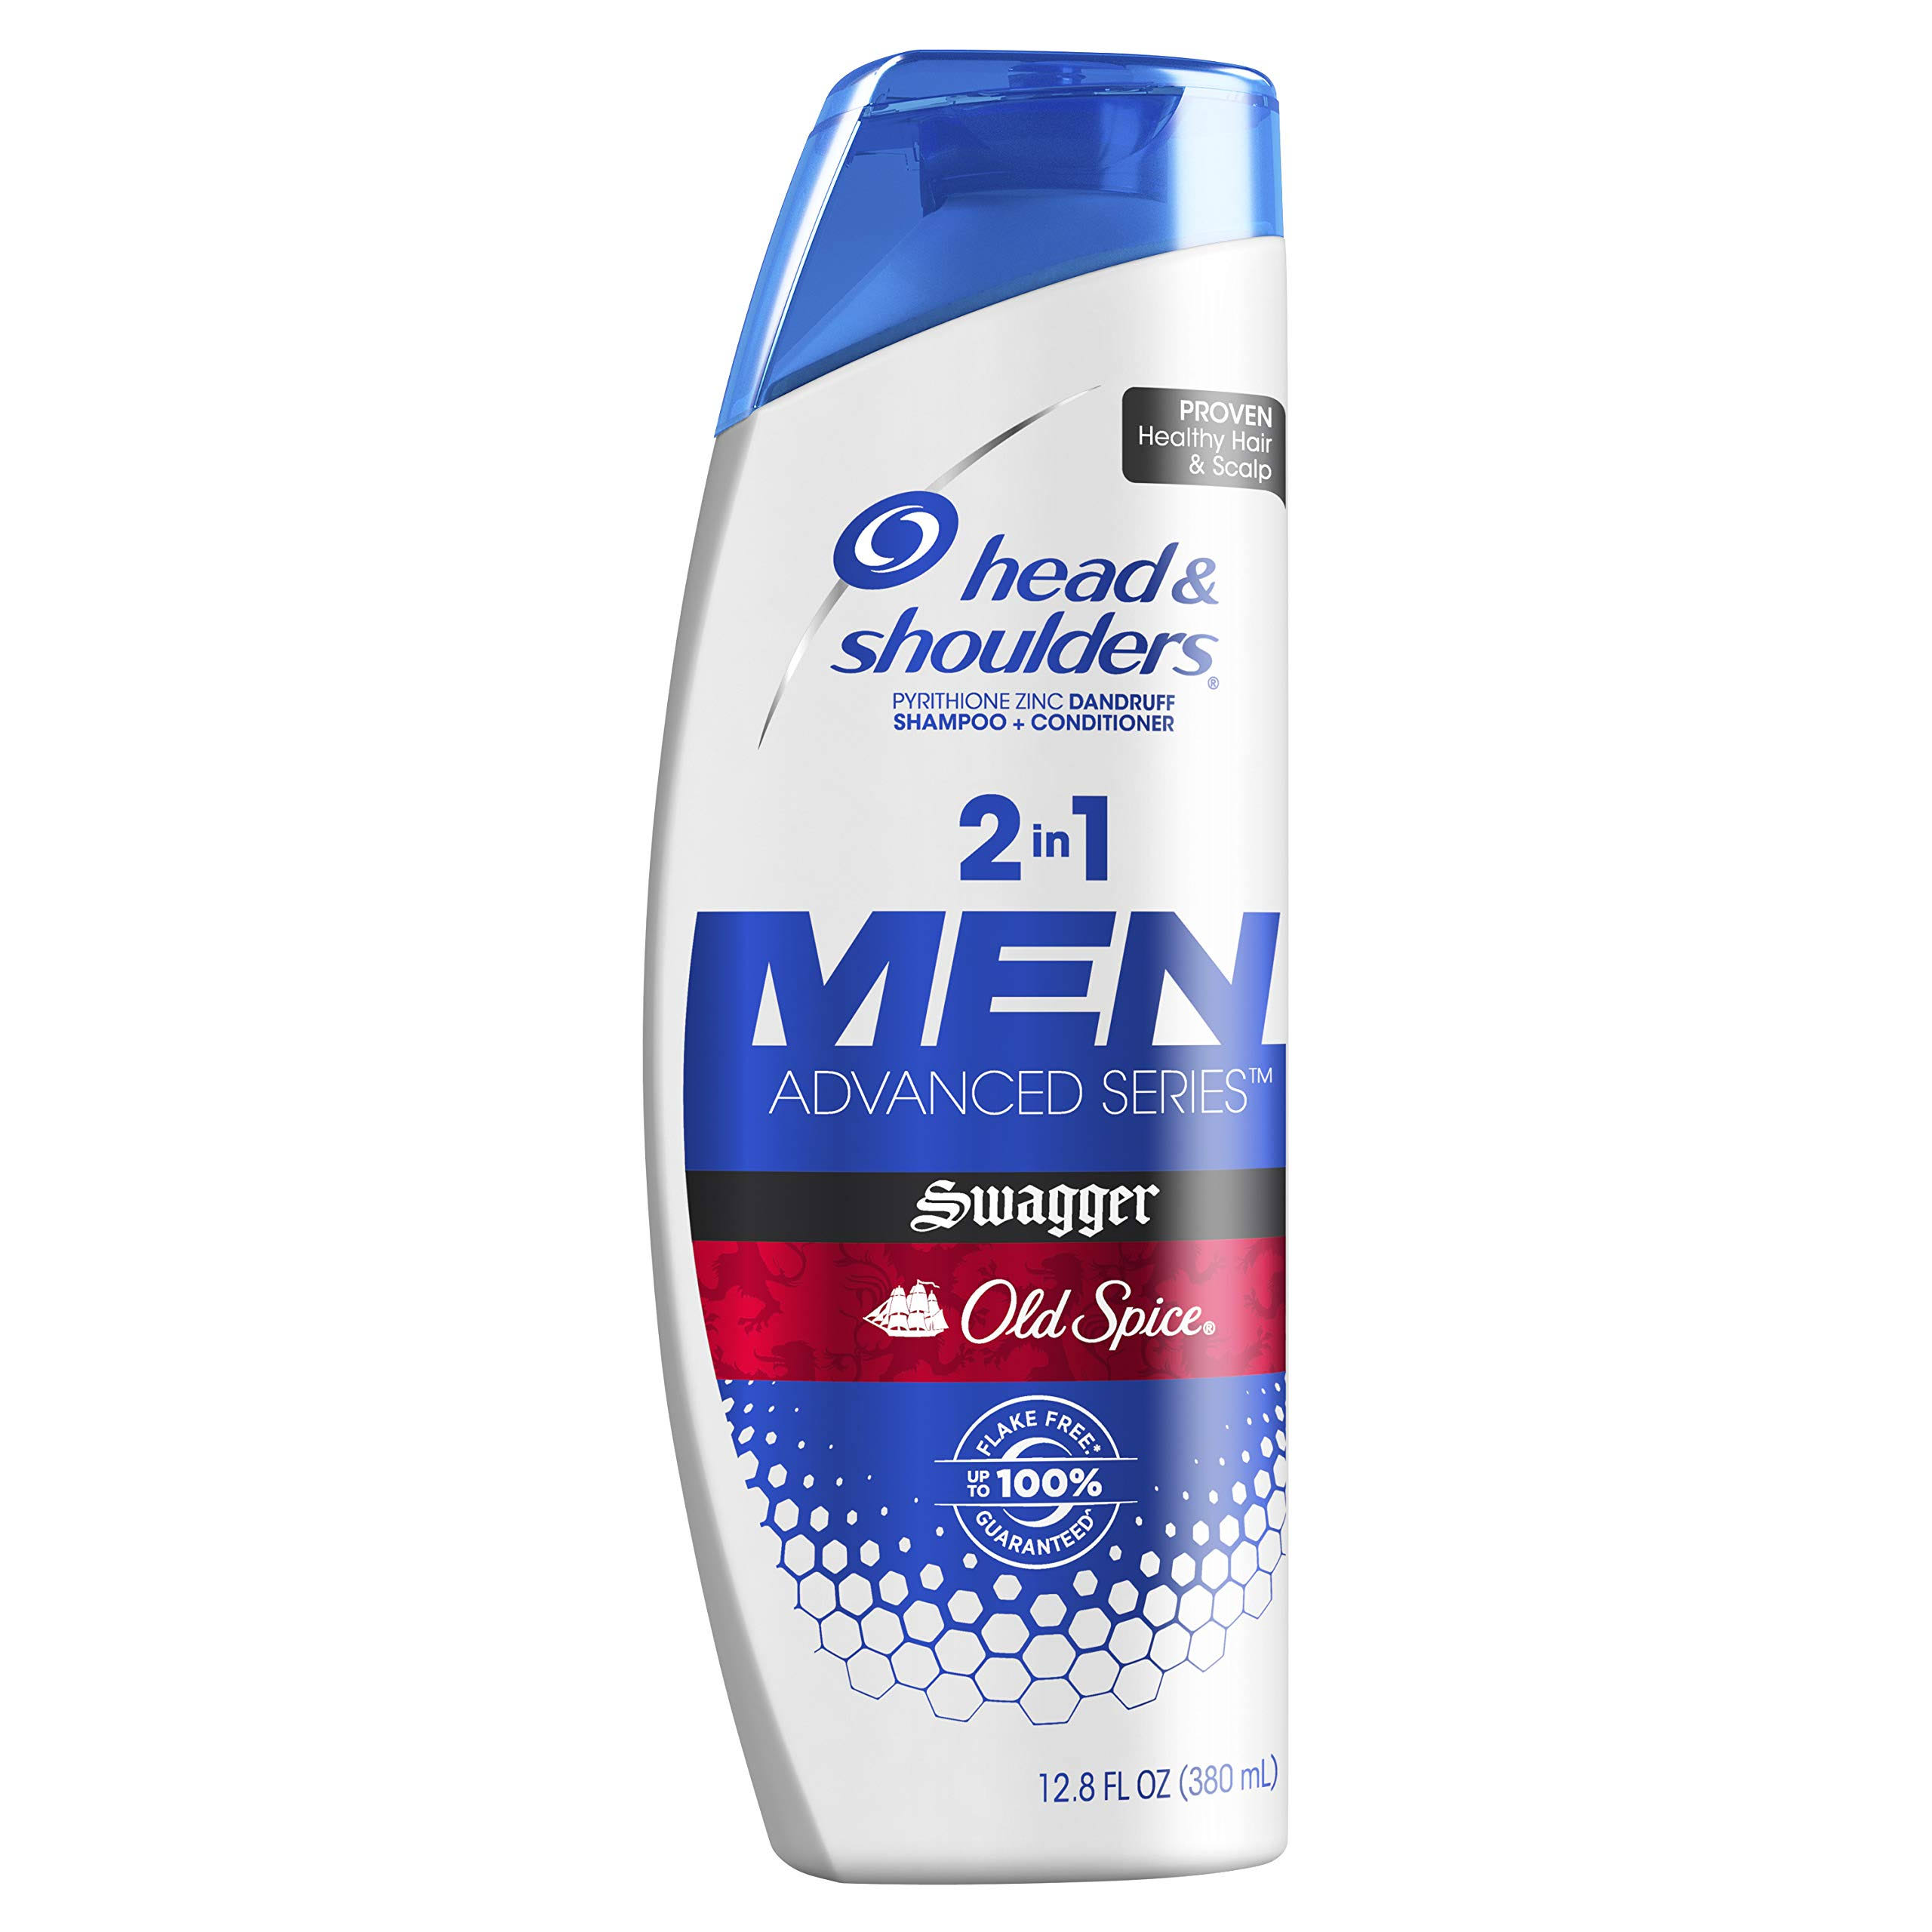 Head & Shoulders Shampoo + Conditioner, Dandruff, 2 in 1, Swagger, Old Spice, Men - 12.8 fl oz